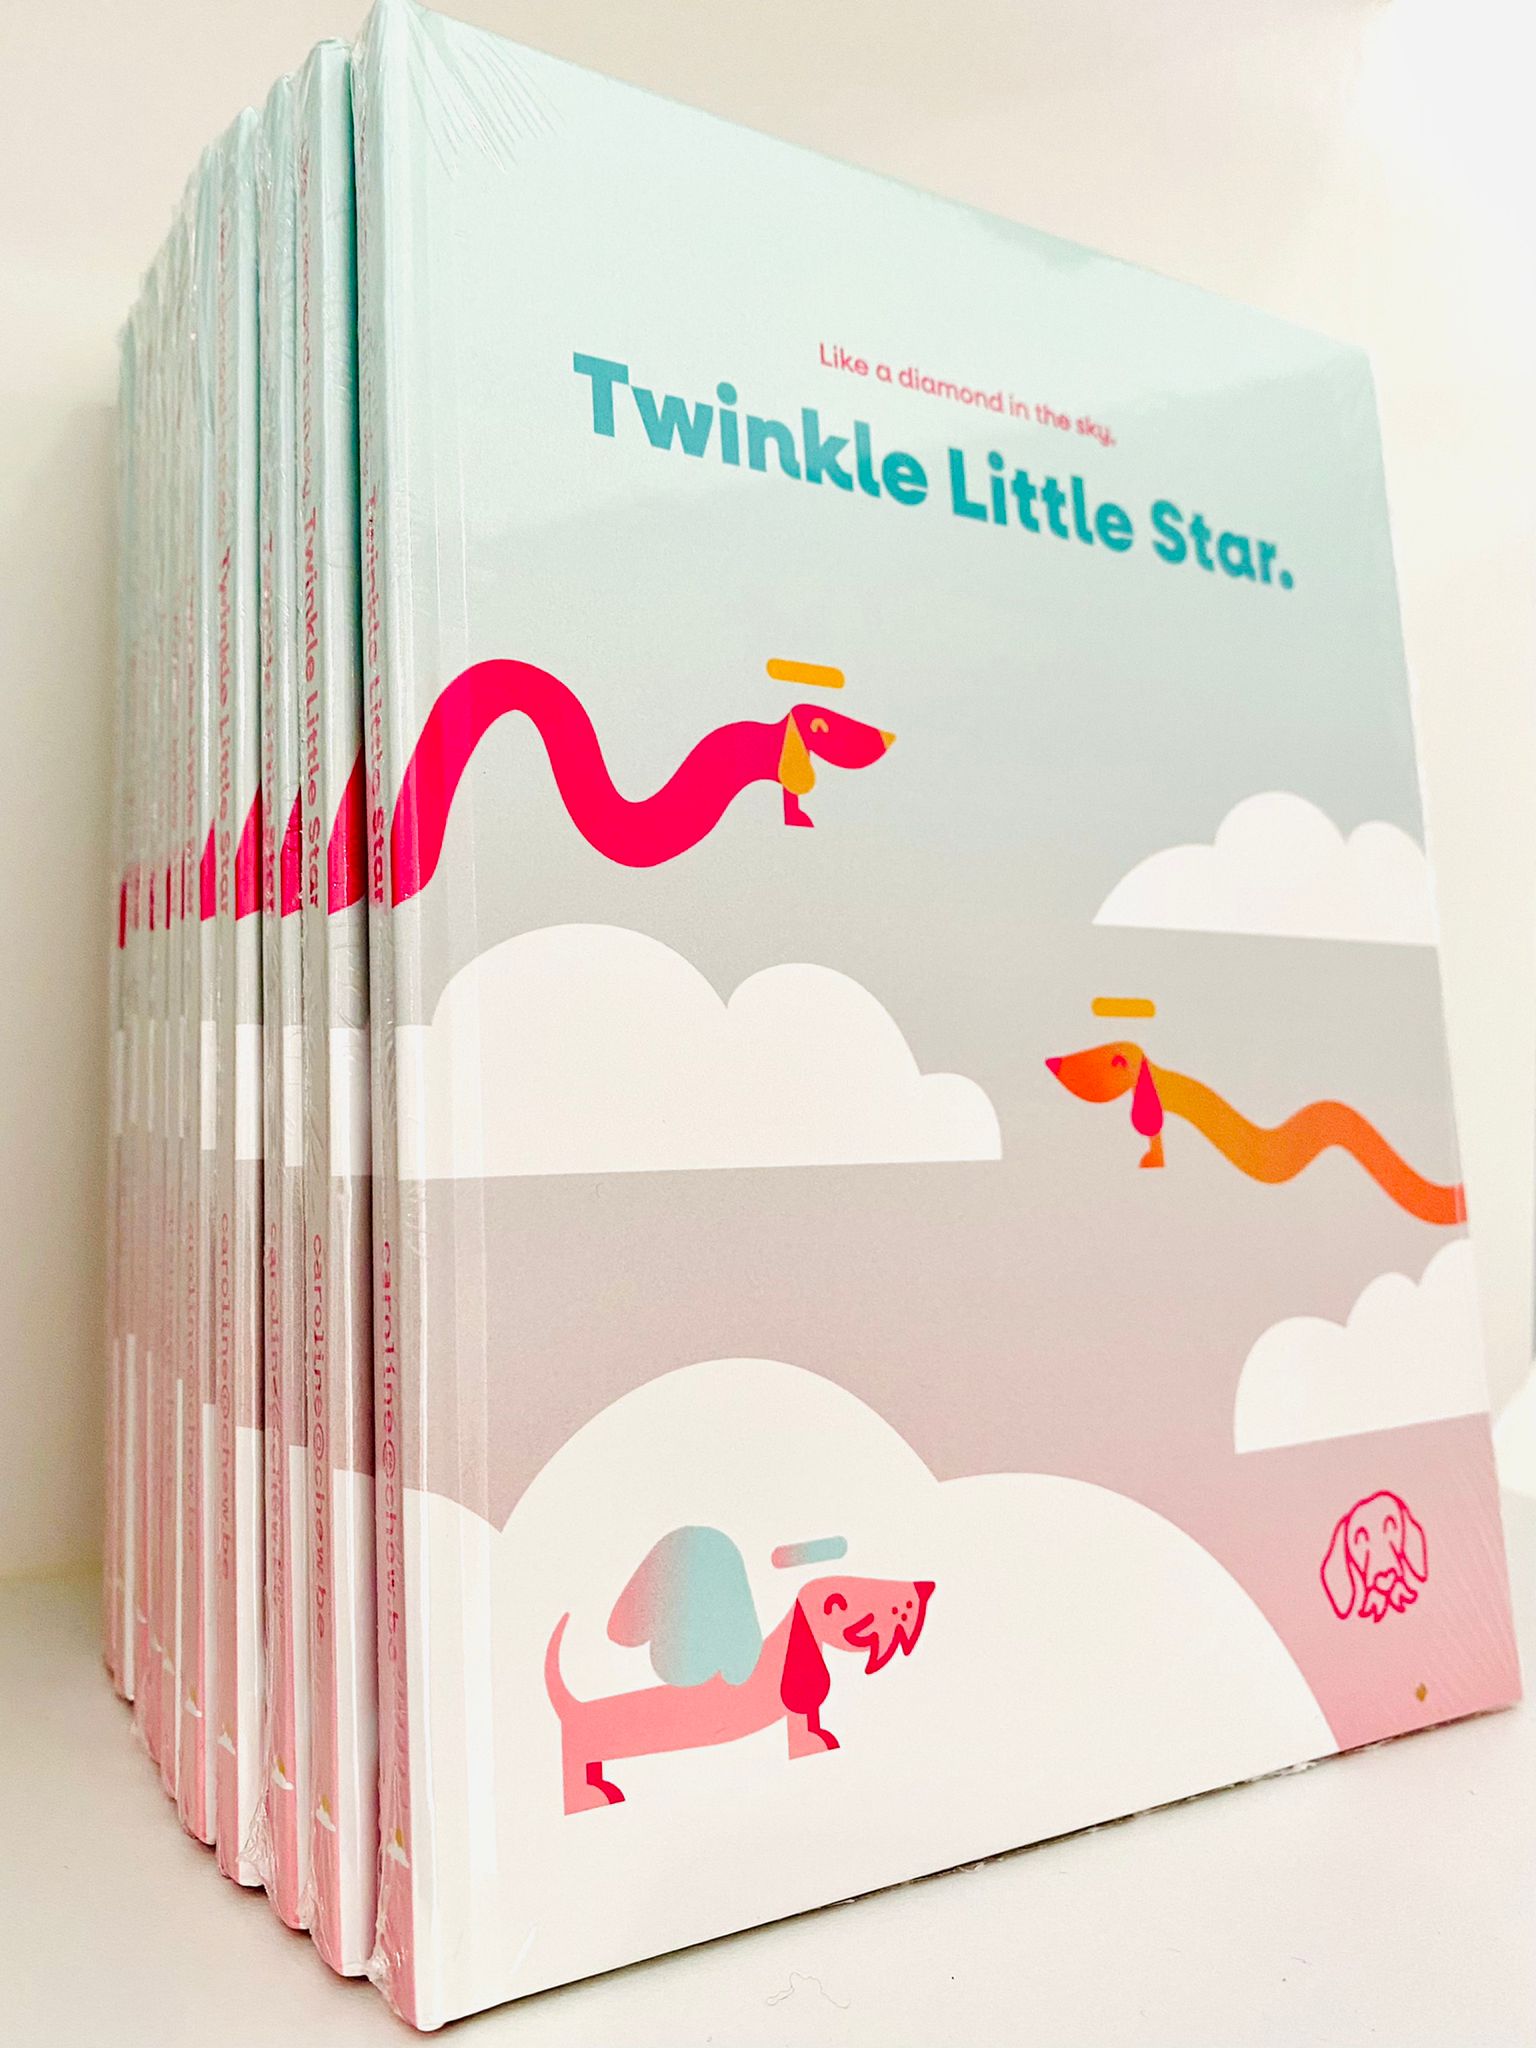 Book de souvenir de chien - Twinkle Little Star - Un diamant dans le ciel